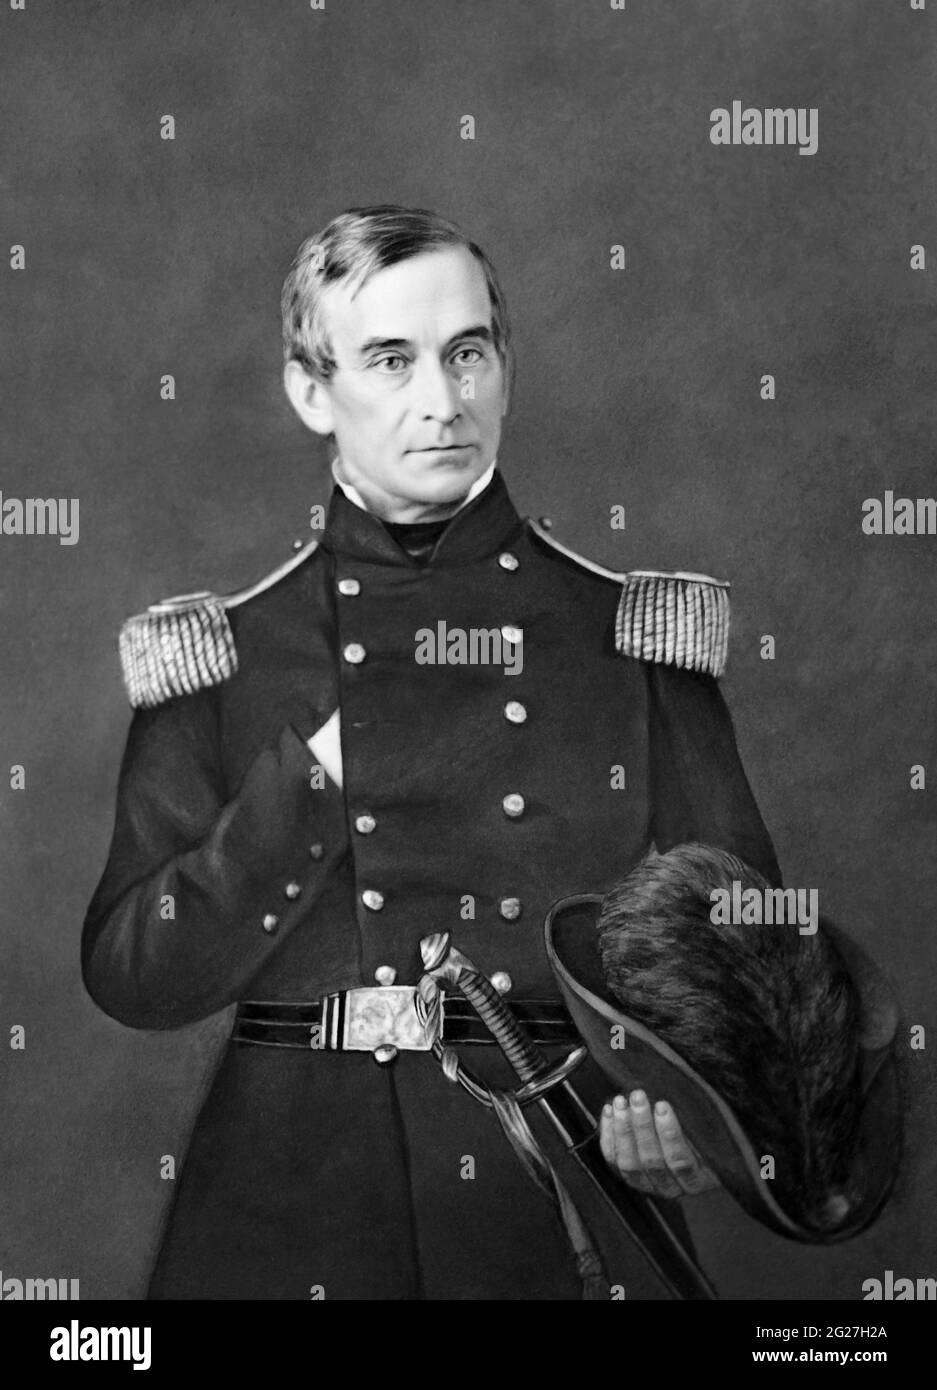 Ritratto del maggiore Robert Anderson, che servì come ufficiale durante la guerra civile americana. Foto Stock